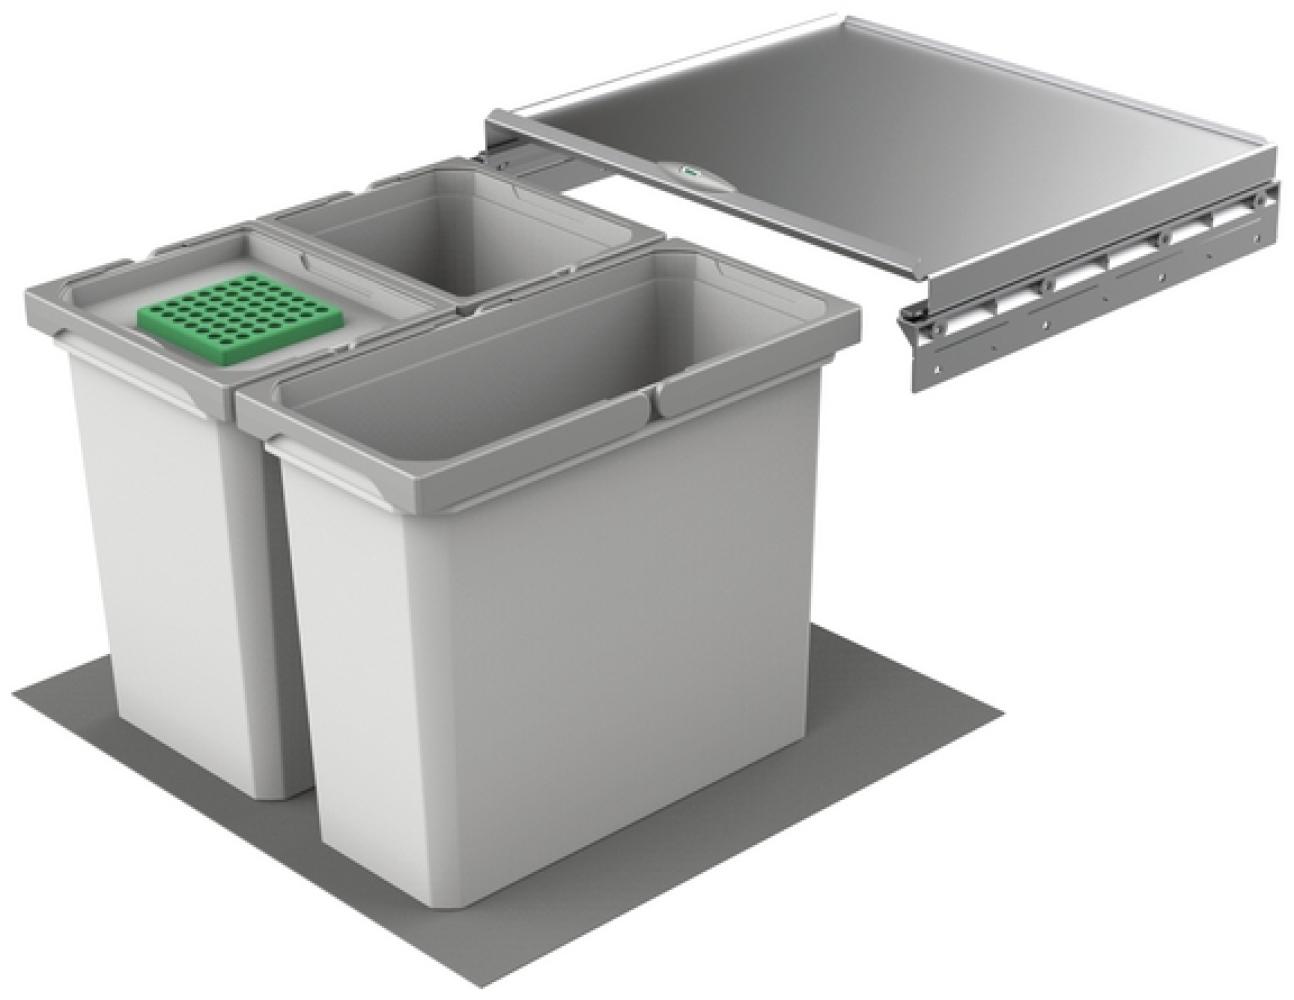 Abfallsorter Cox Box 2T/500-3 mit dreifach Trennung inkl. Biodeckel für 50 cm Schrankbreite / Abfalleimer / Abfallsammler / Mülleimer Bild 1